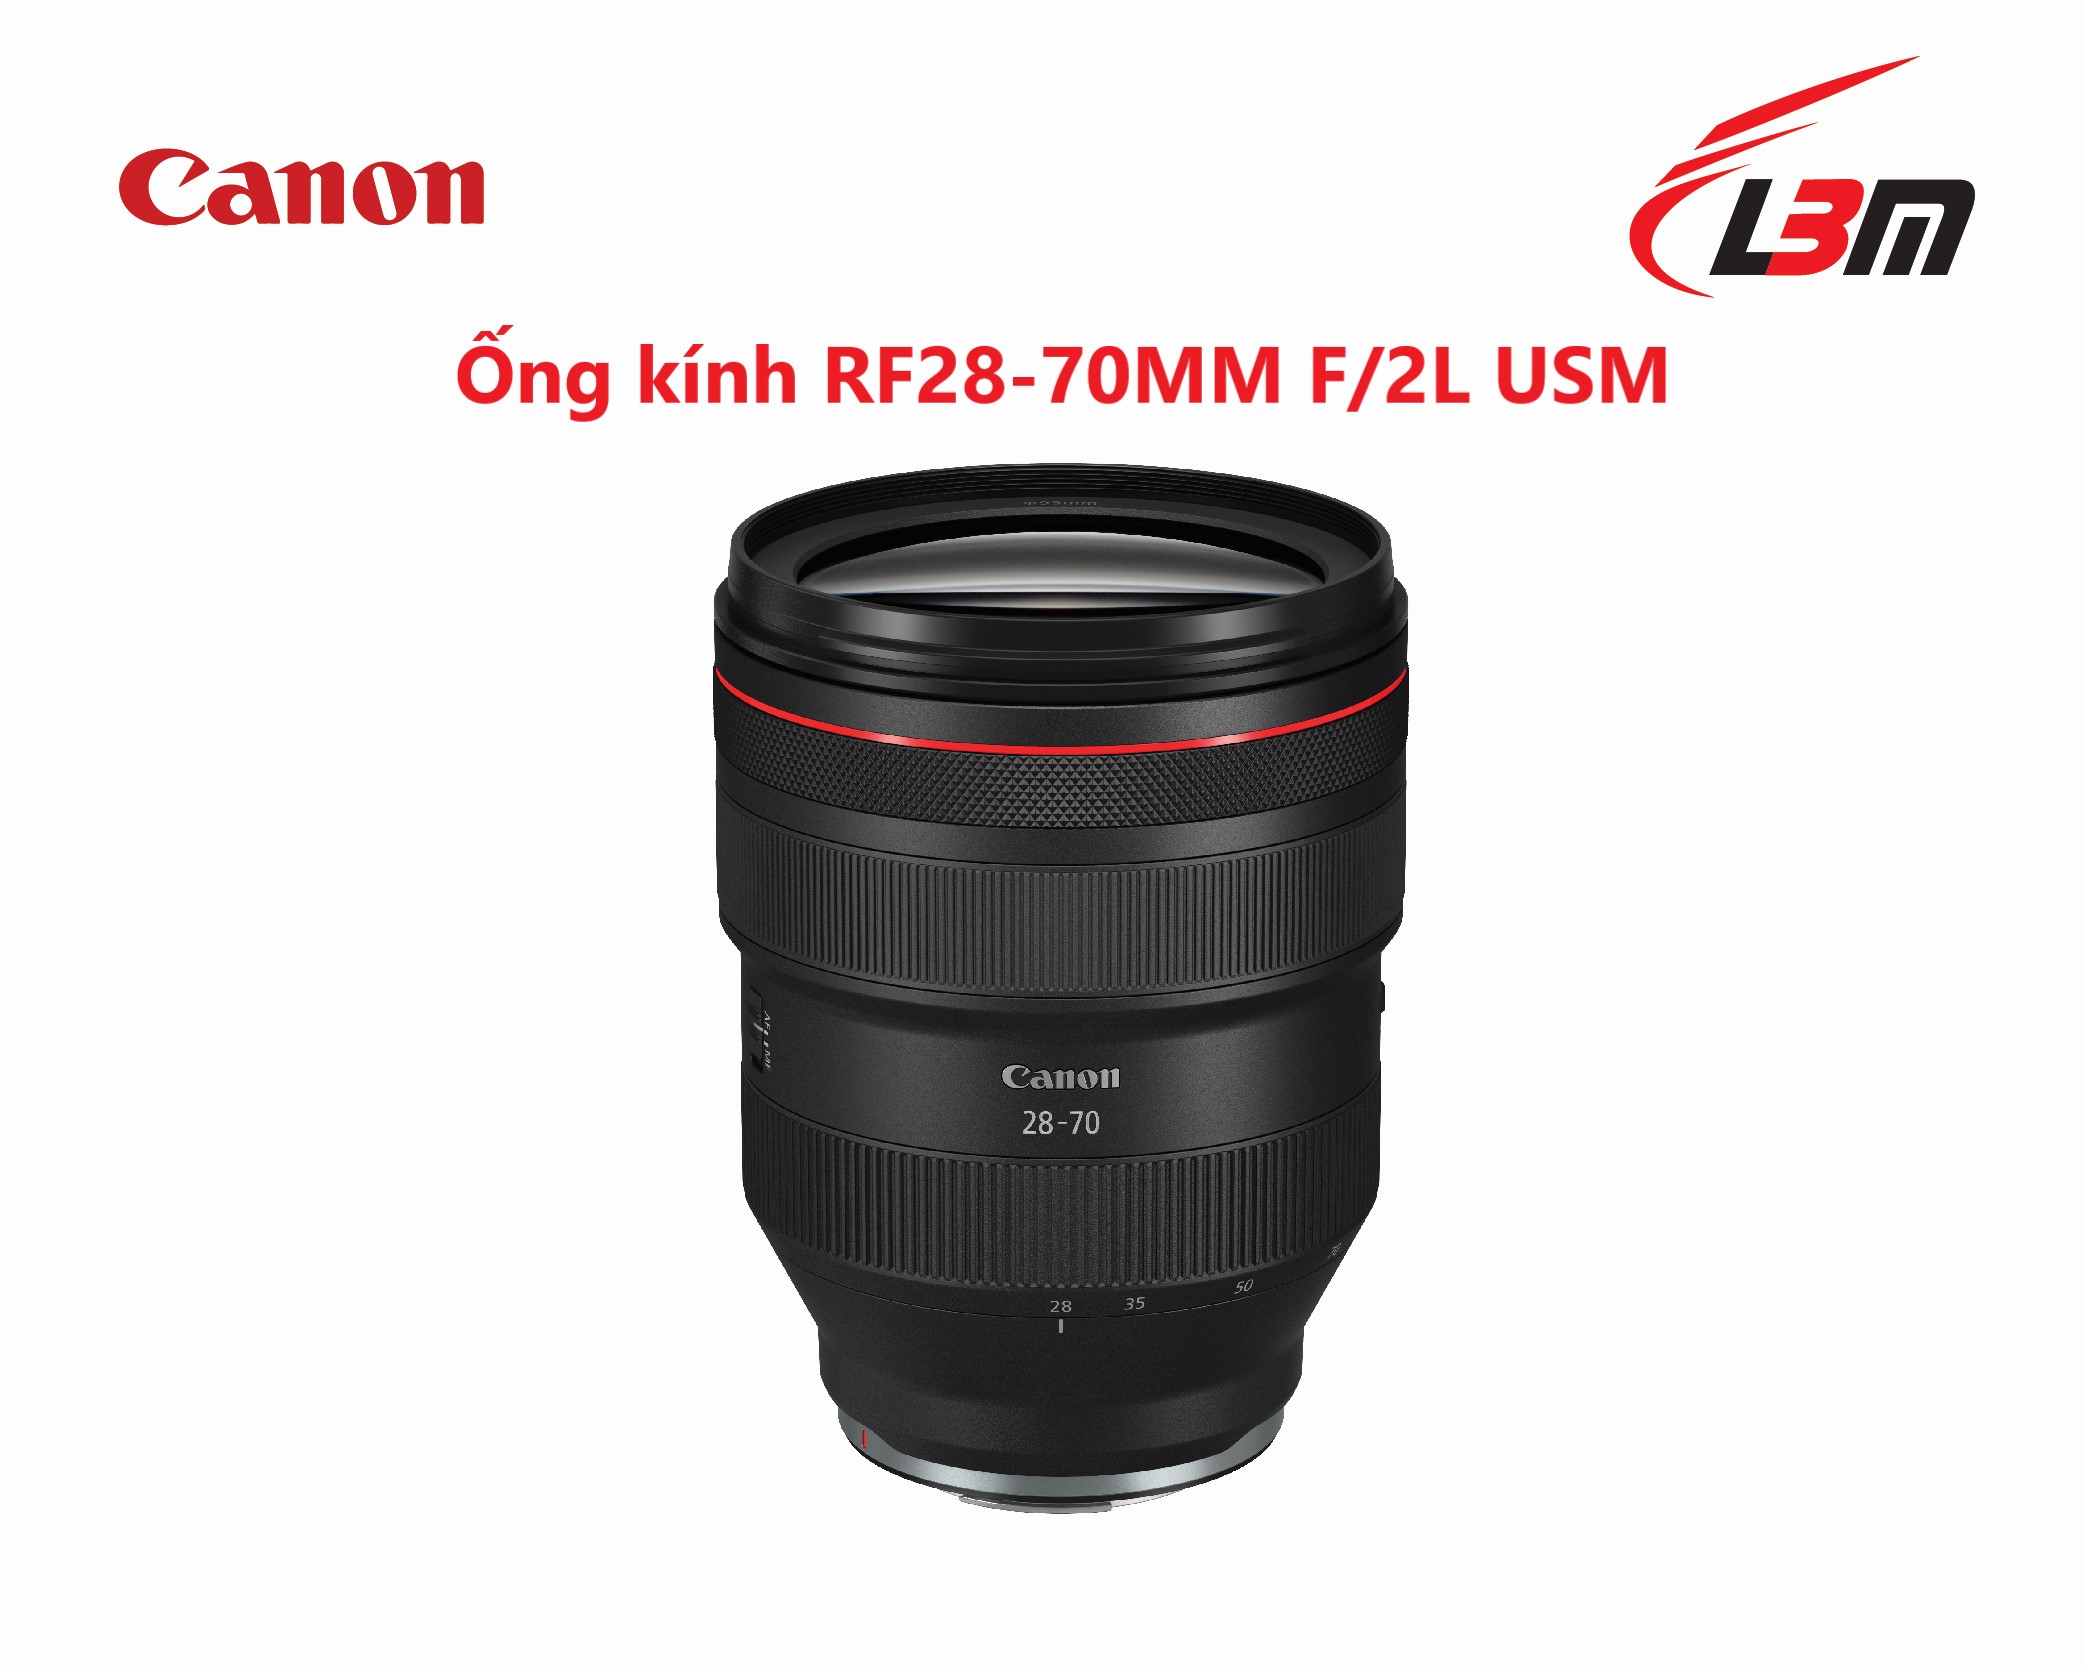 Ống kính Canon RF28-70MM F/2L USM |  Chính Hãng LBM